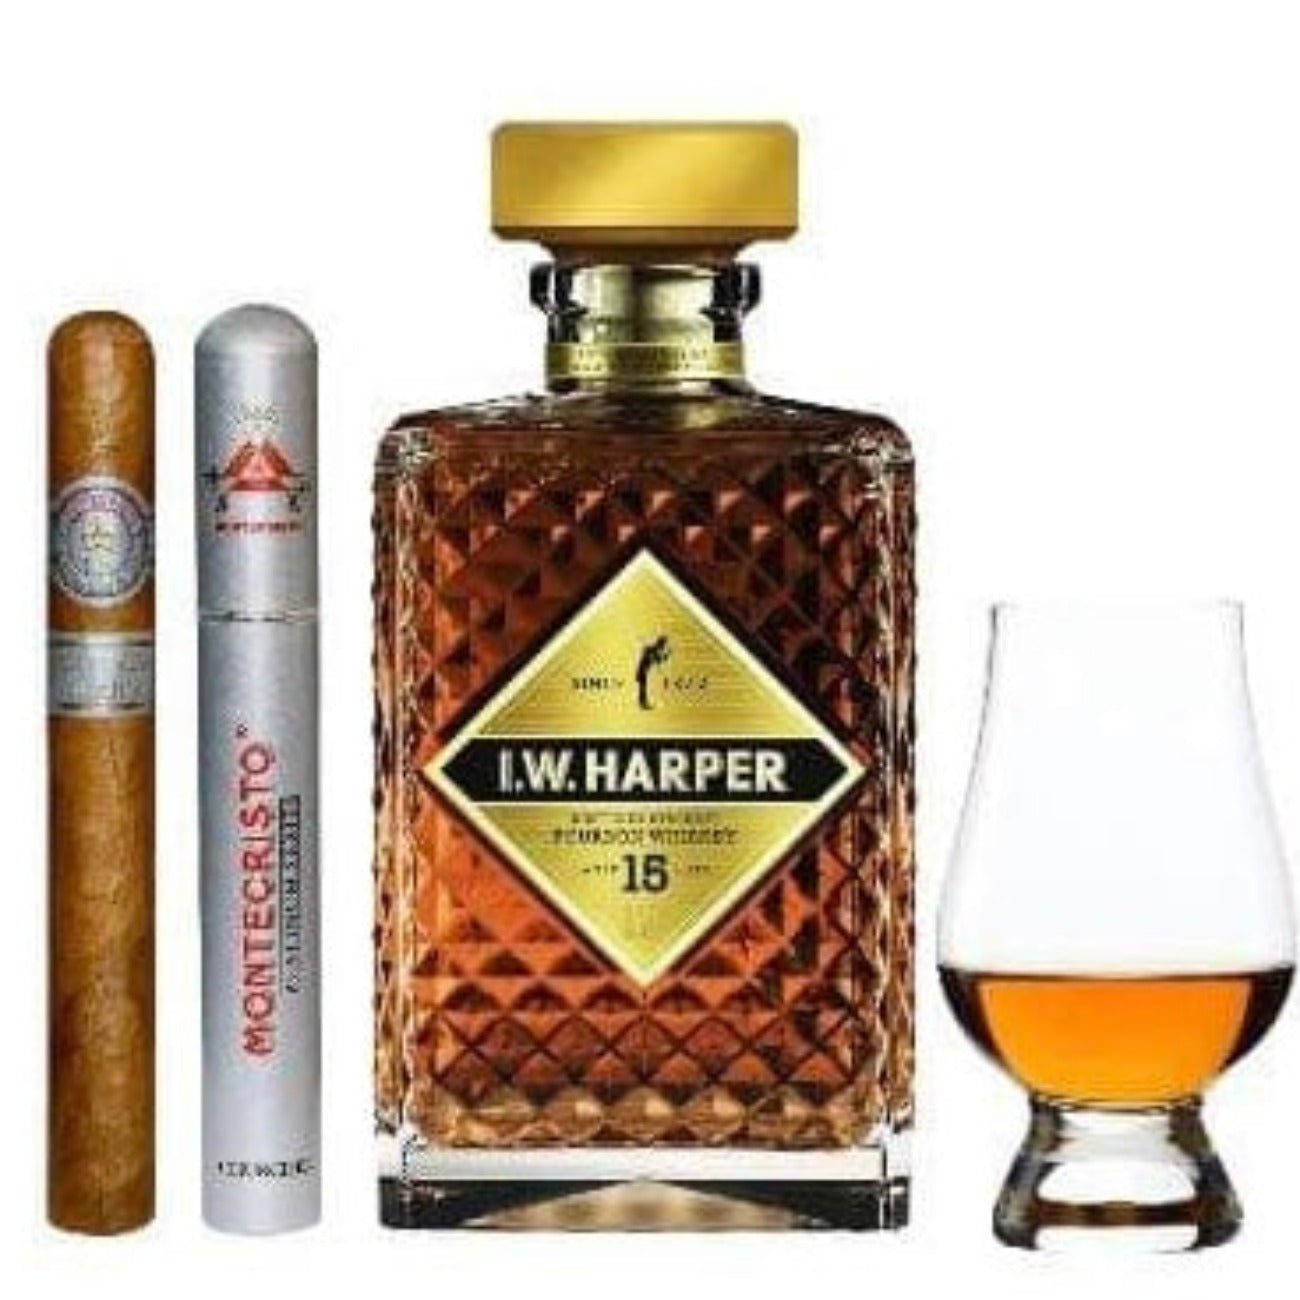 I.W. Harper 15yr | Cigar & Glencairn Gift set | Bourbon Whiskey